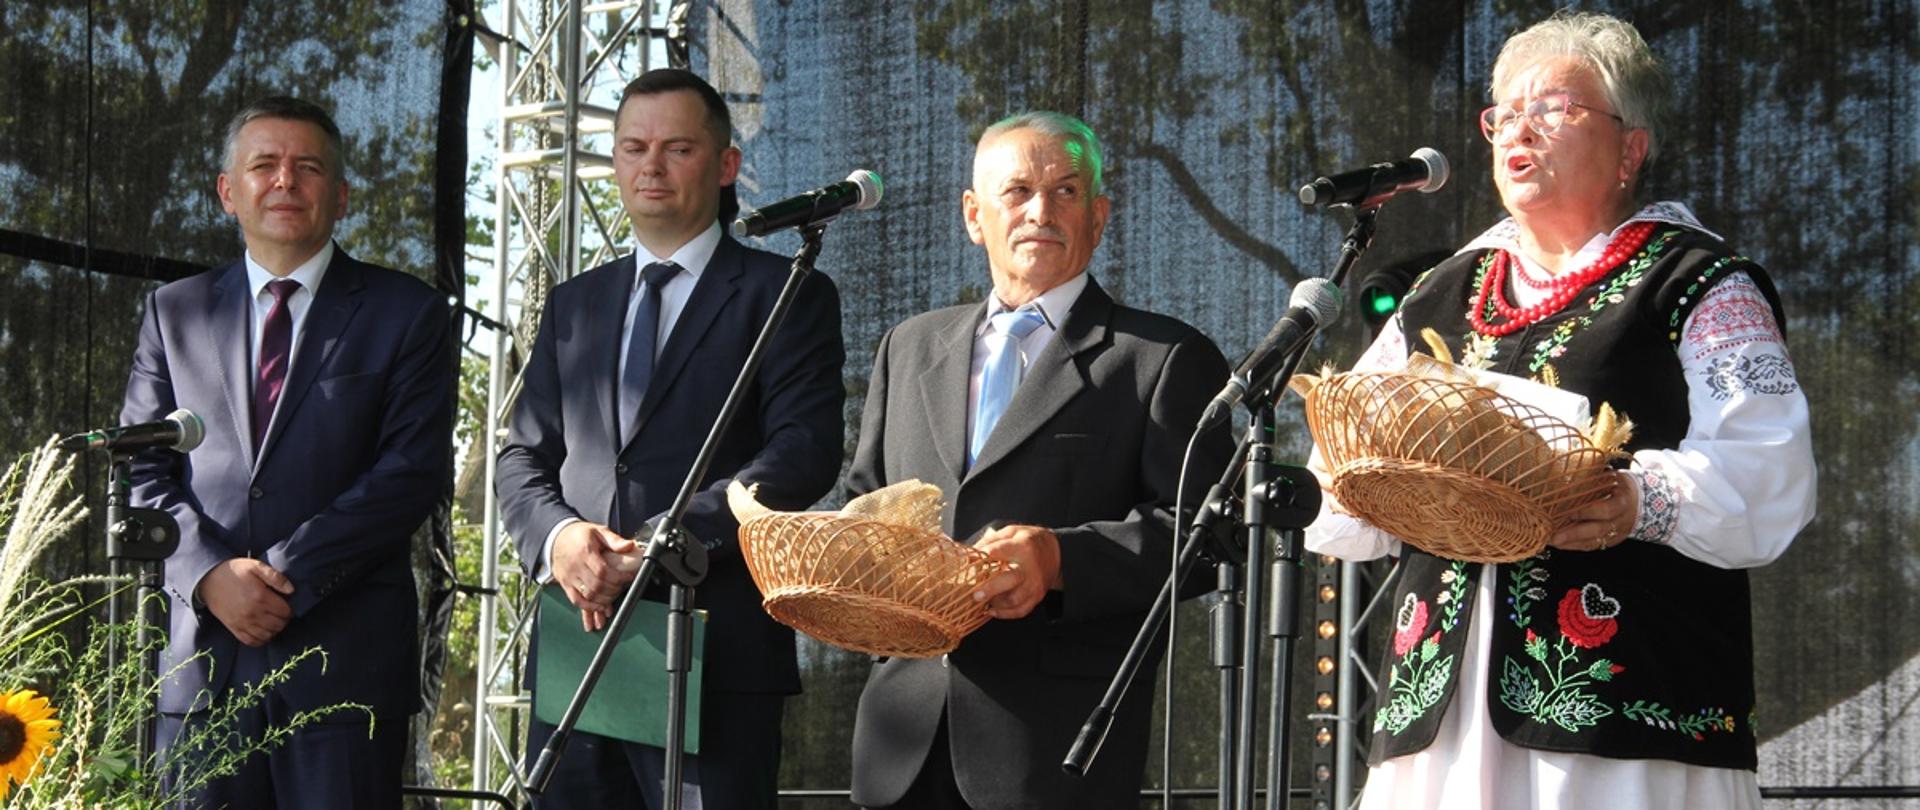 Na scenie stoją starostowie dożynek z chlebem, a po ich prawej stronie starosta oleśnicki i wójt Dobroszyc